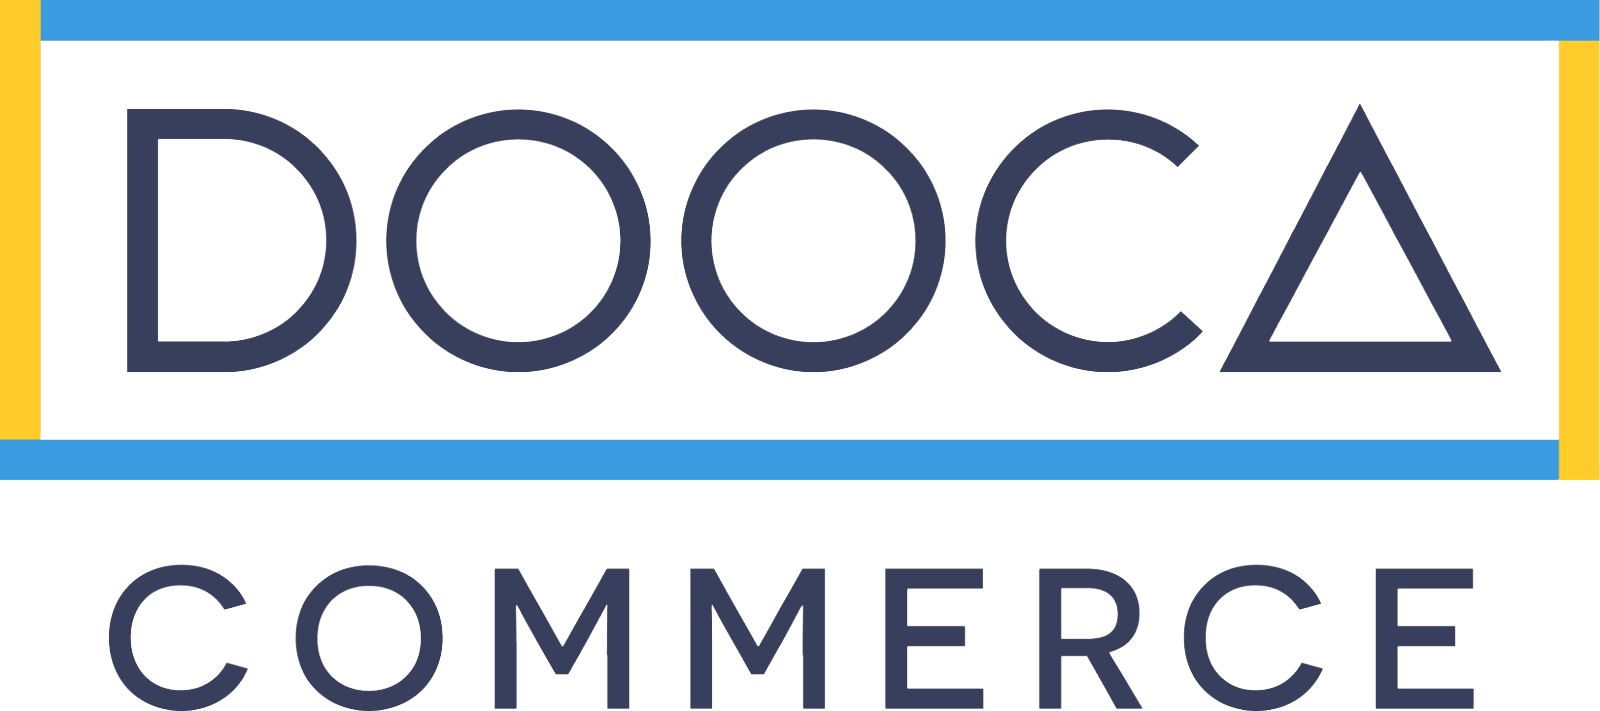 dooca commerce